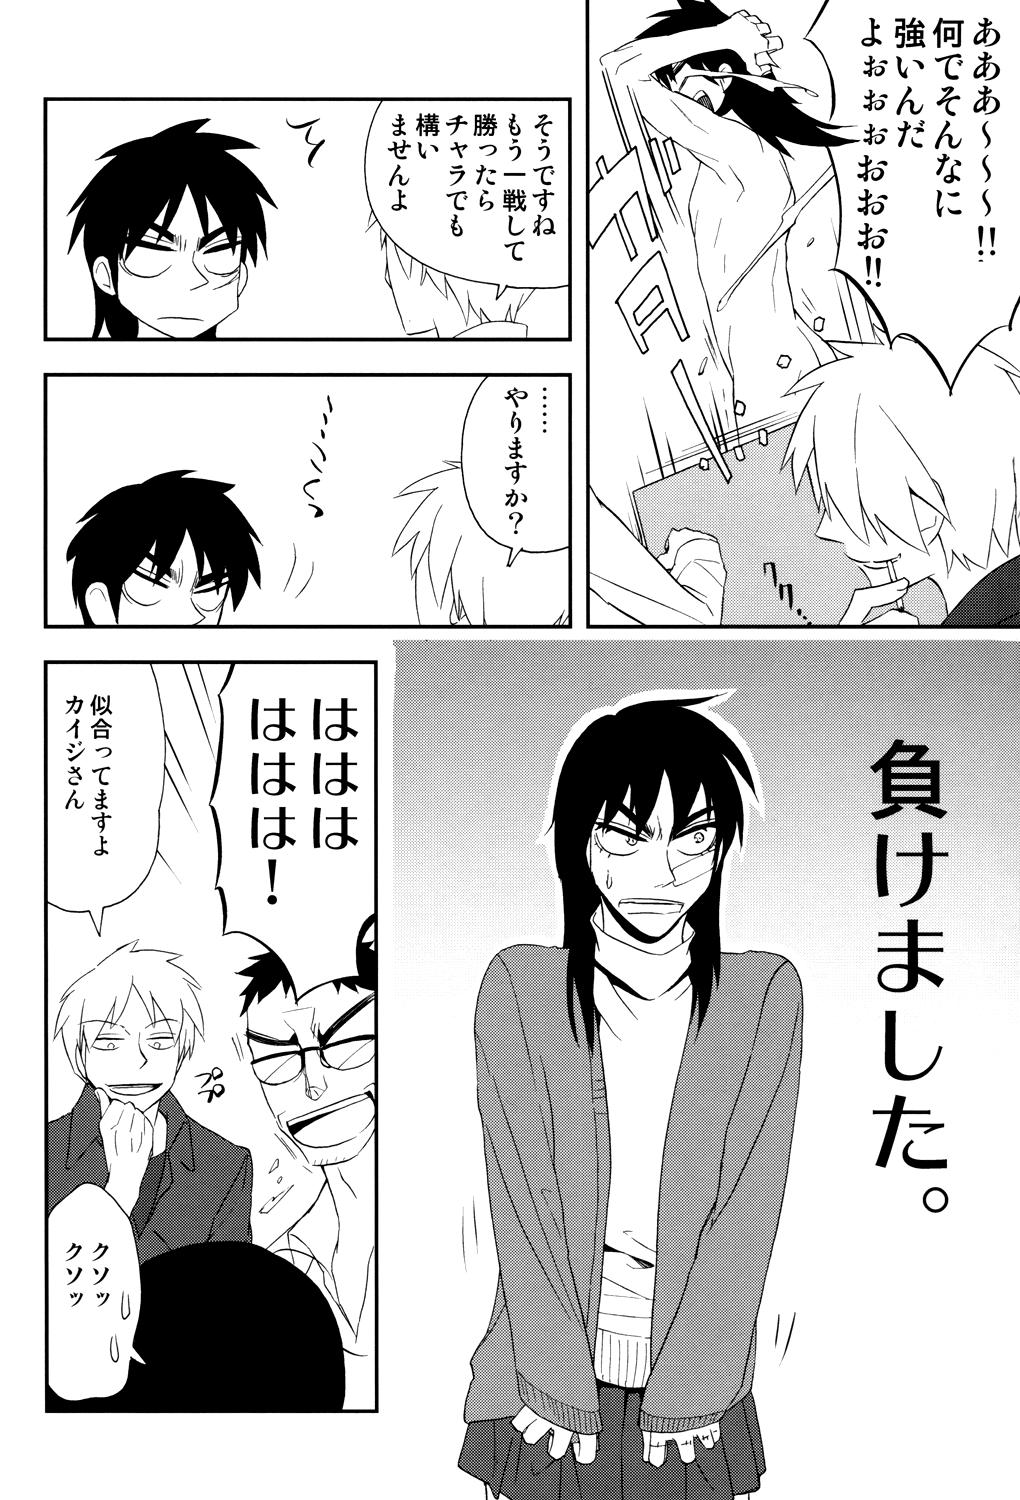 Pauzudo Ten no Kamisama no Iu Toori! - Kaiji Akagi Delicia - Page 6